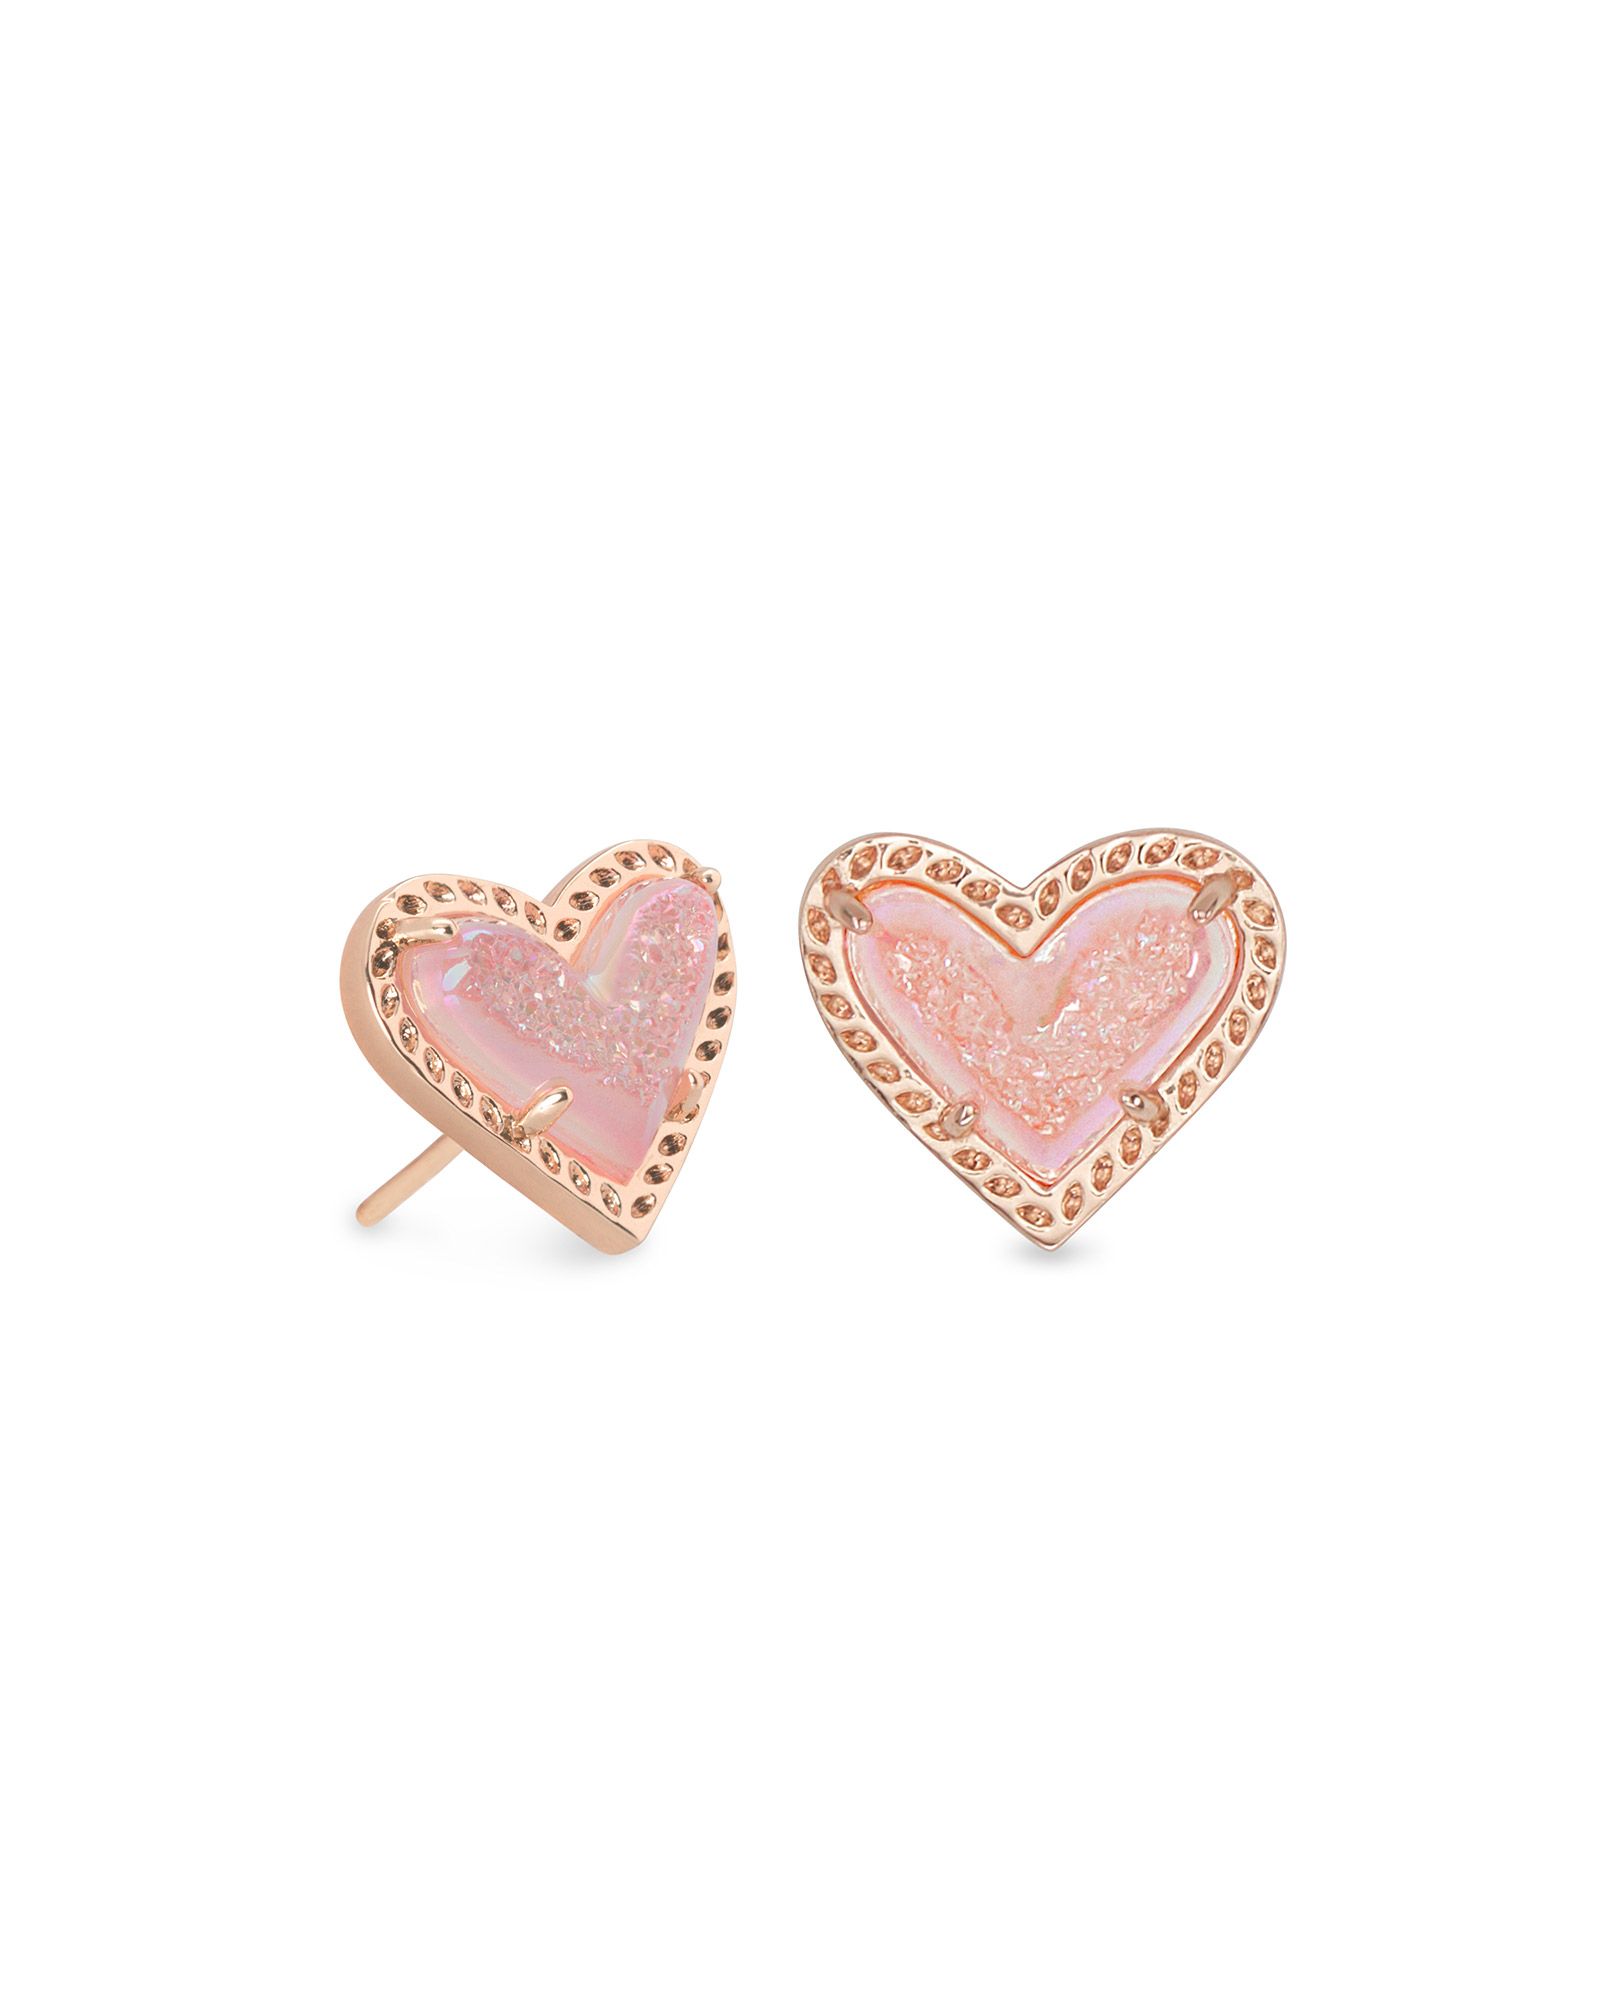 Ari Heart Rose Gold Stud Earrings in Pink Drusy | Kendra Scott | Kendra Scott